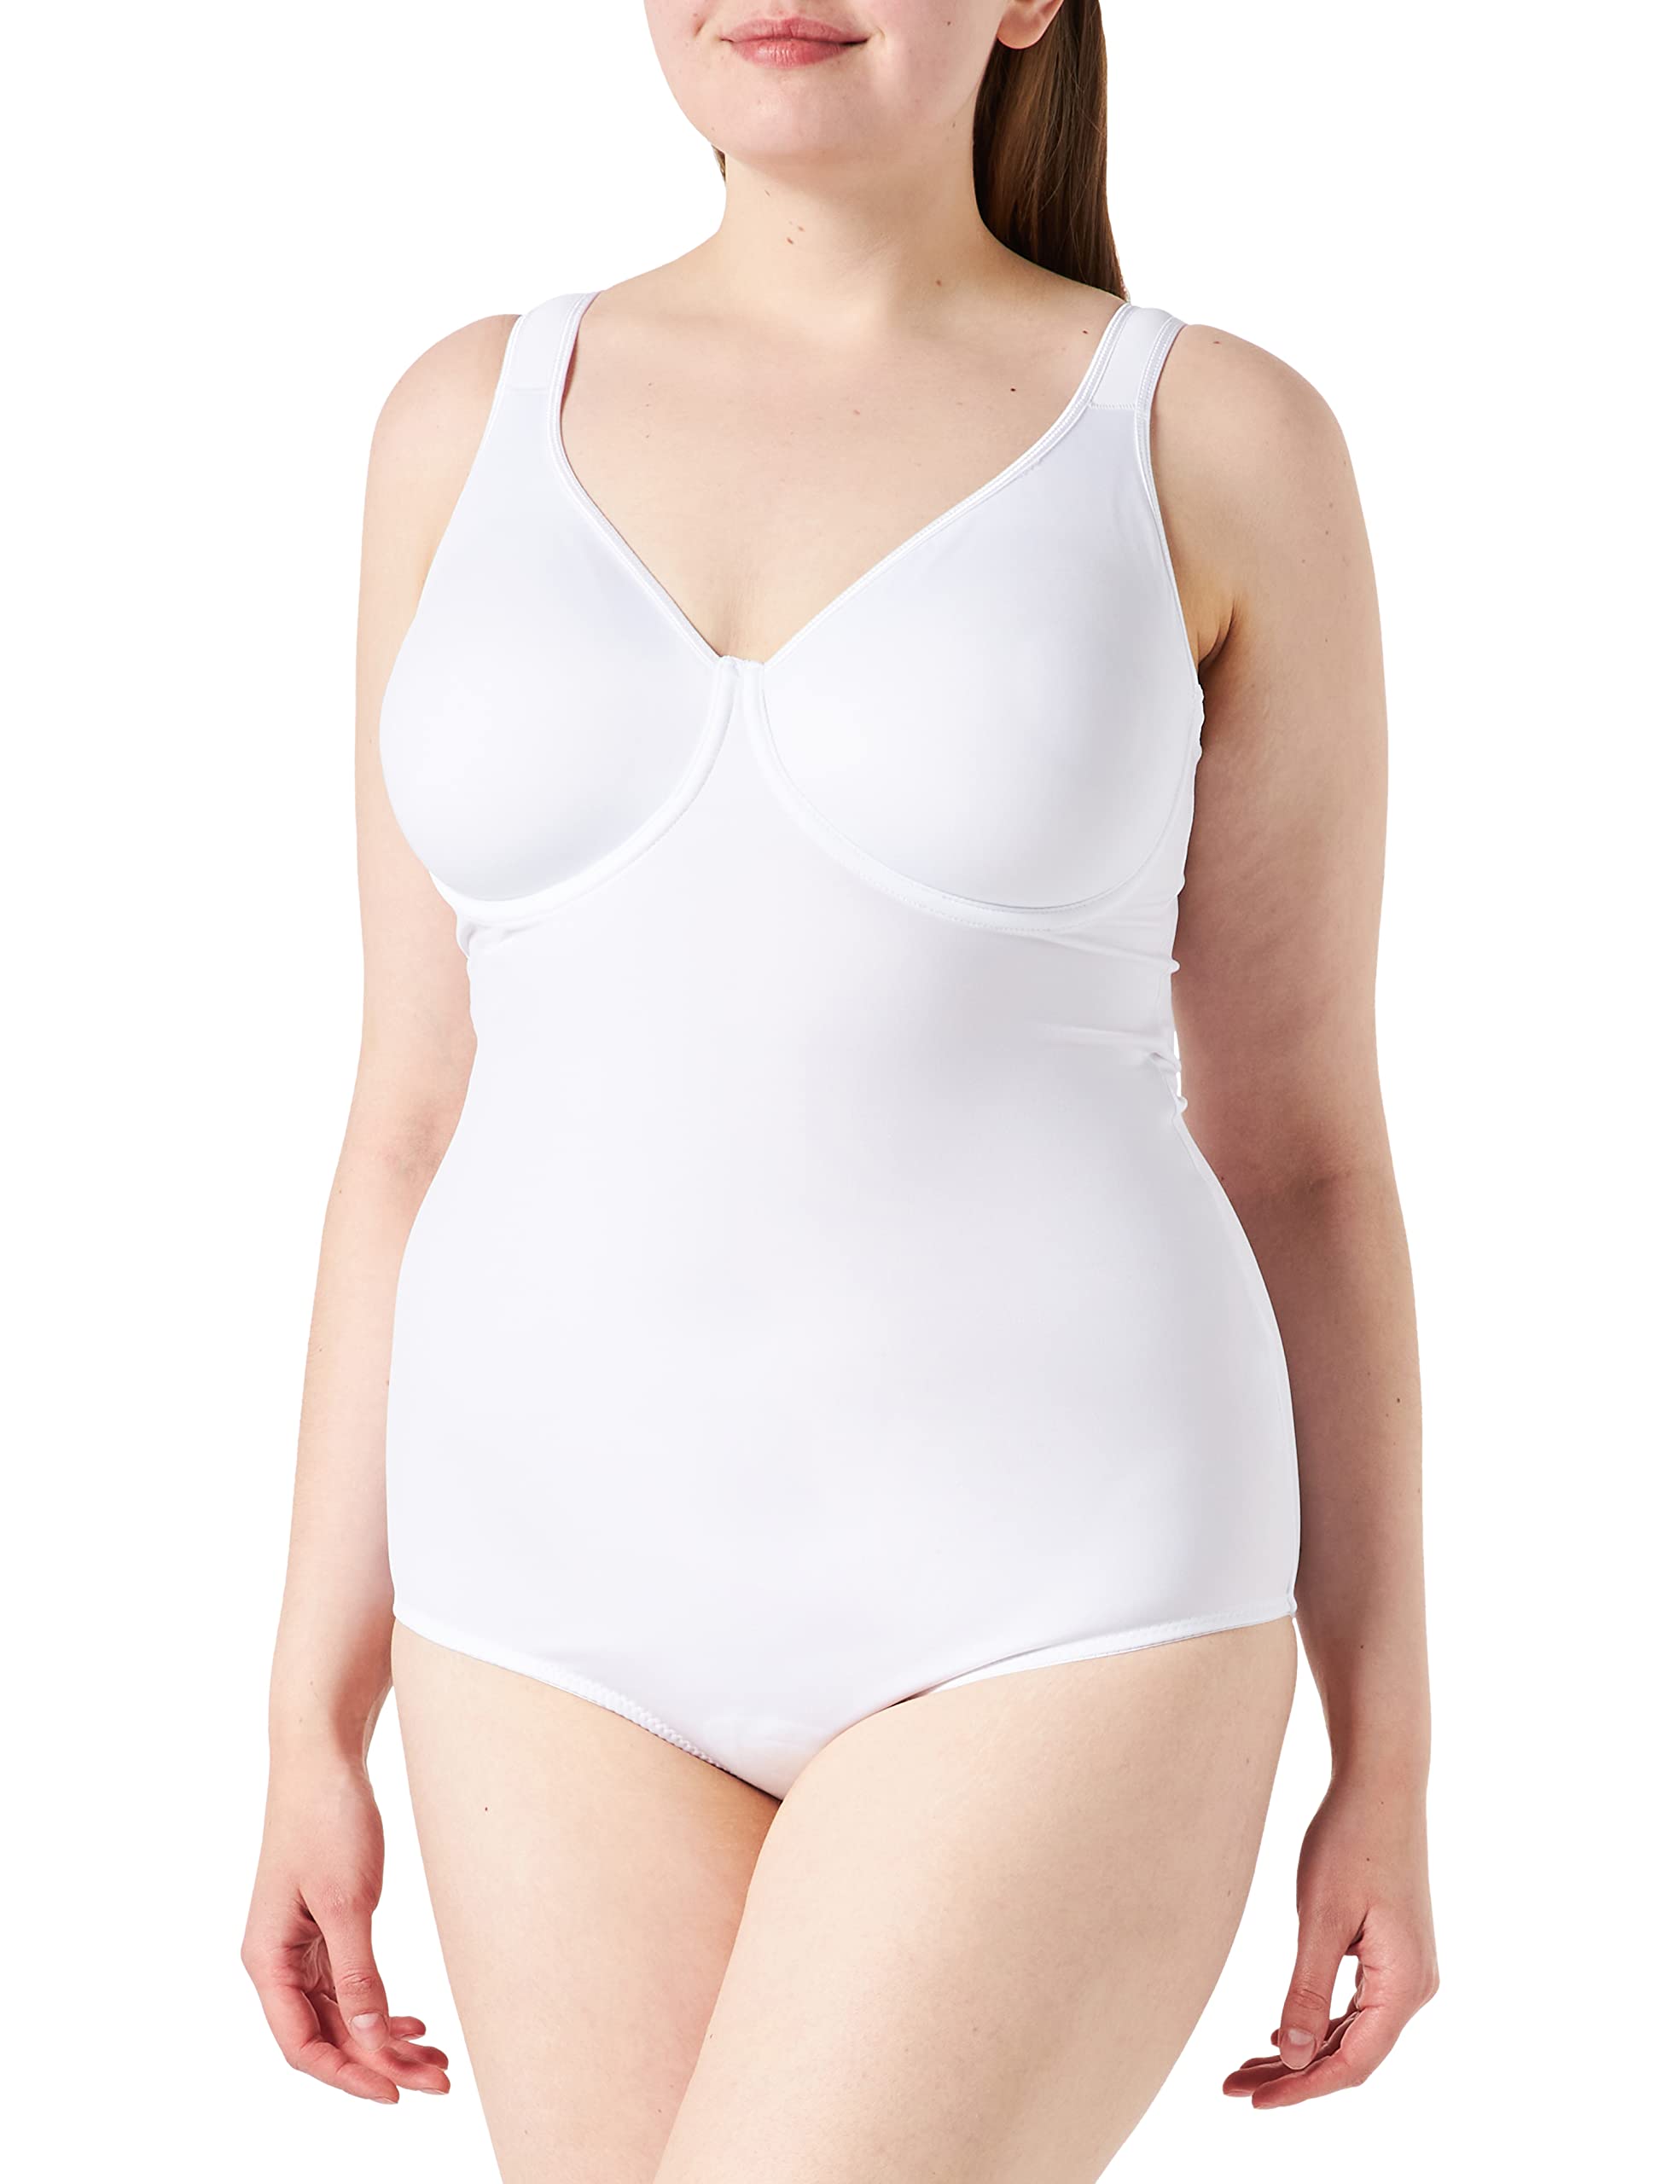 Sassa Damen Formender Body doppelt vorgeformt 00903, Einfarbig, Gr. 85D, Weiß (Weiß 00100)